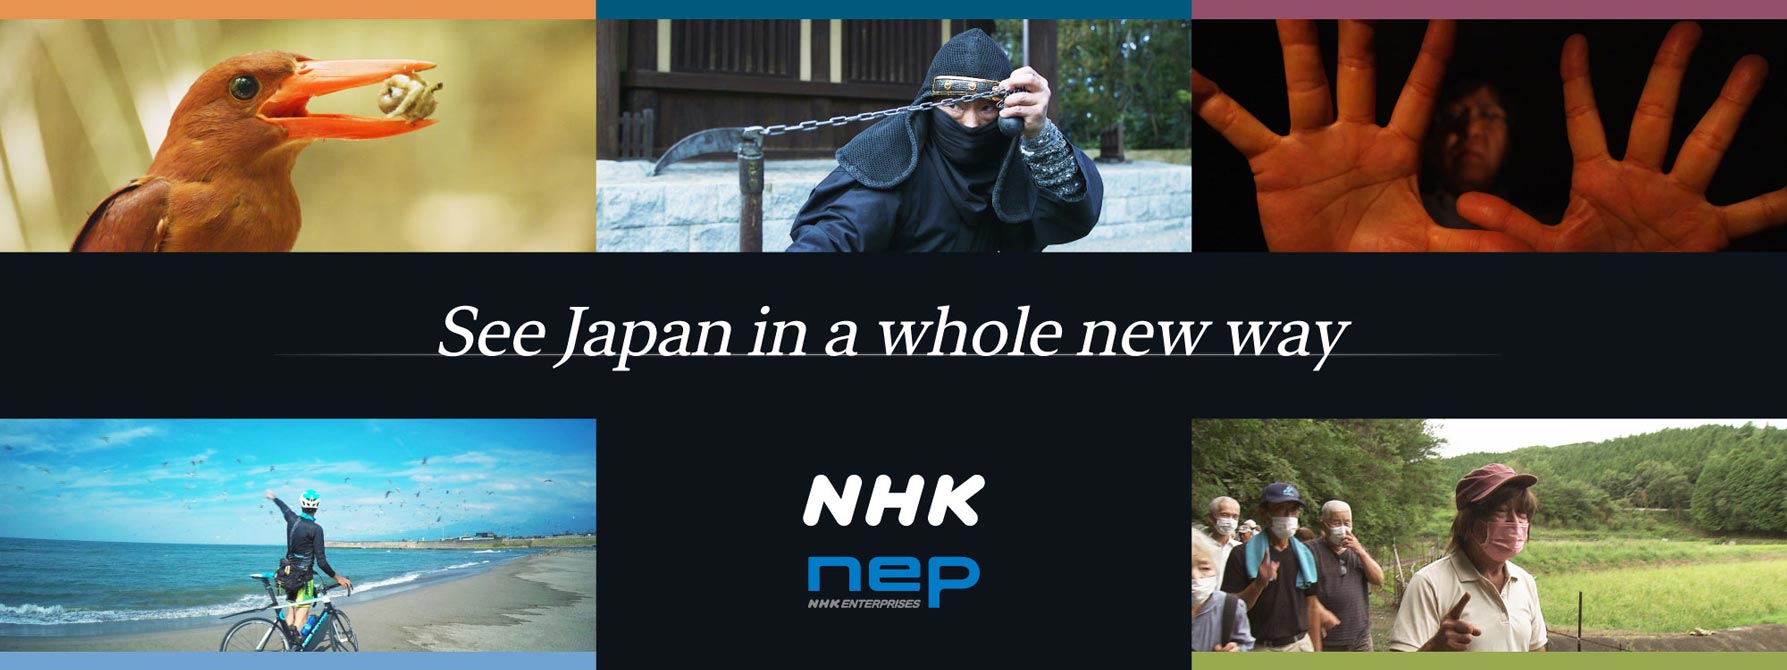 NHK Enterprises